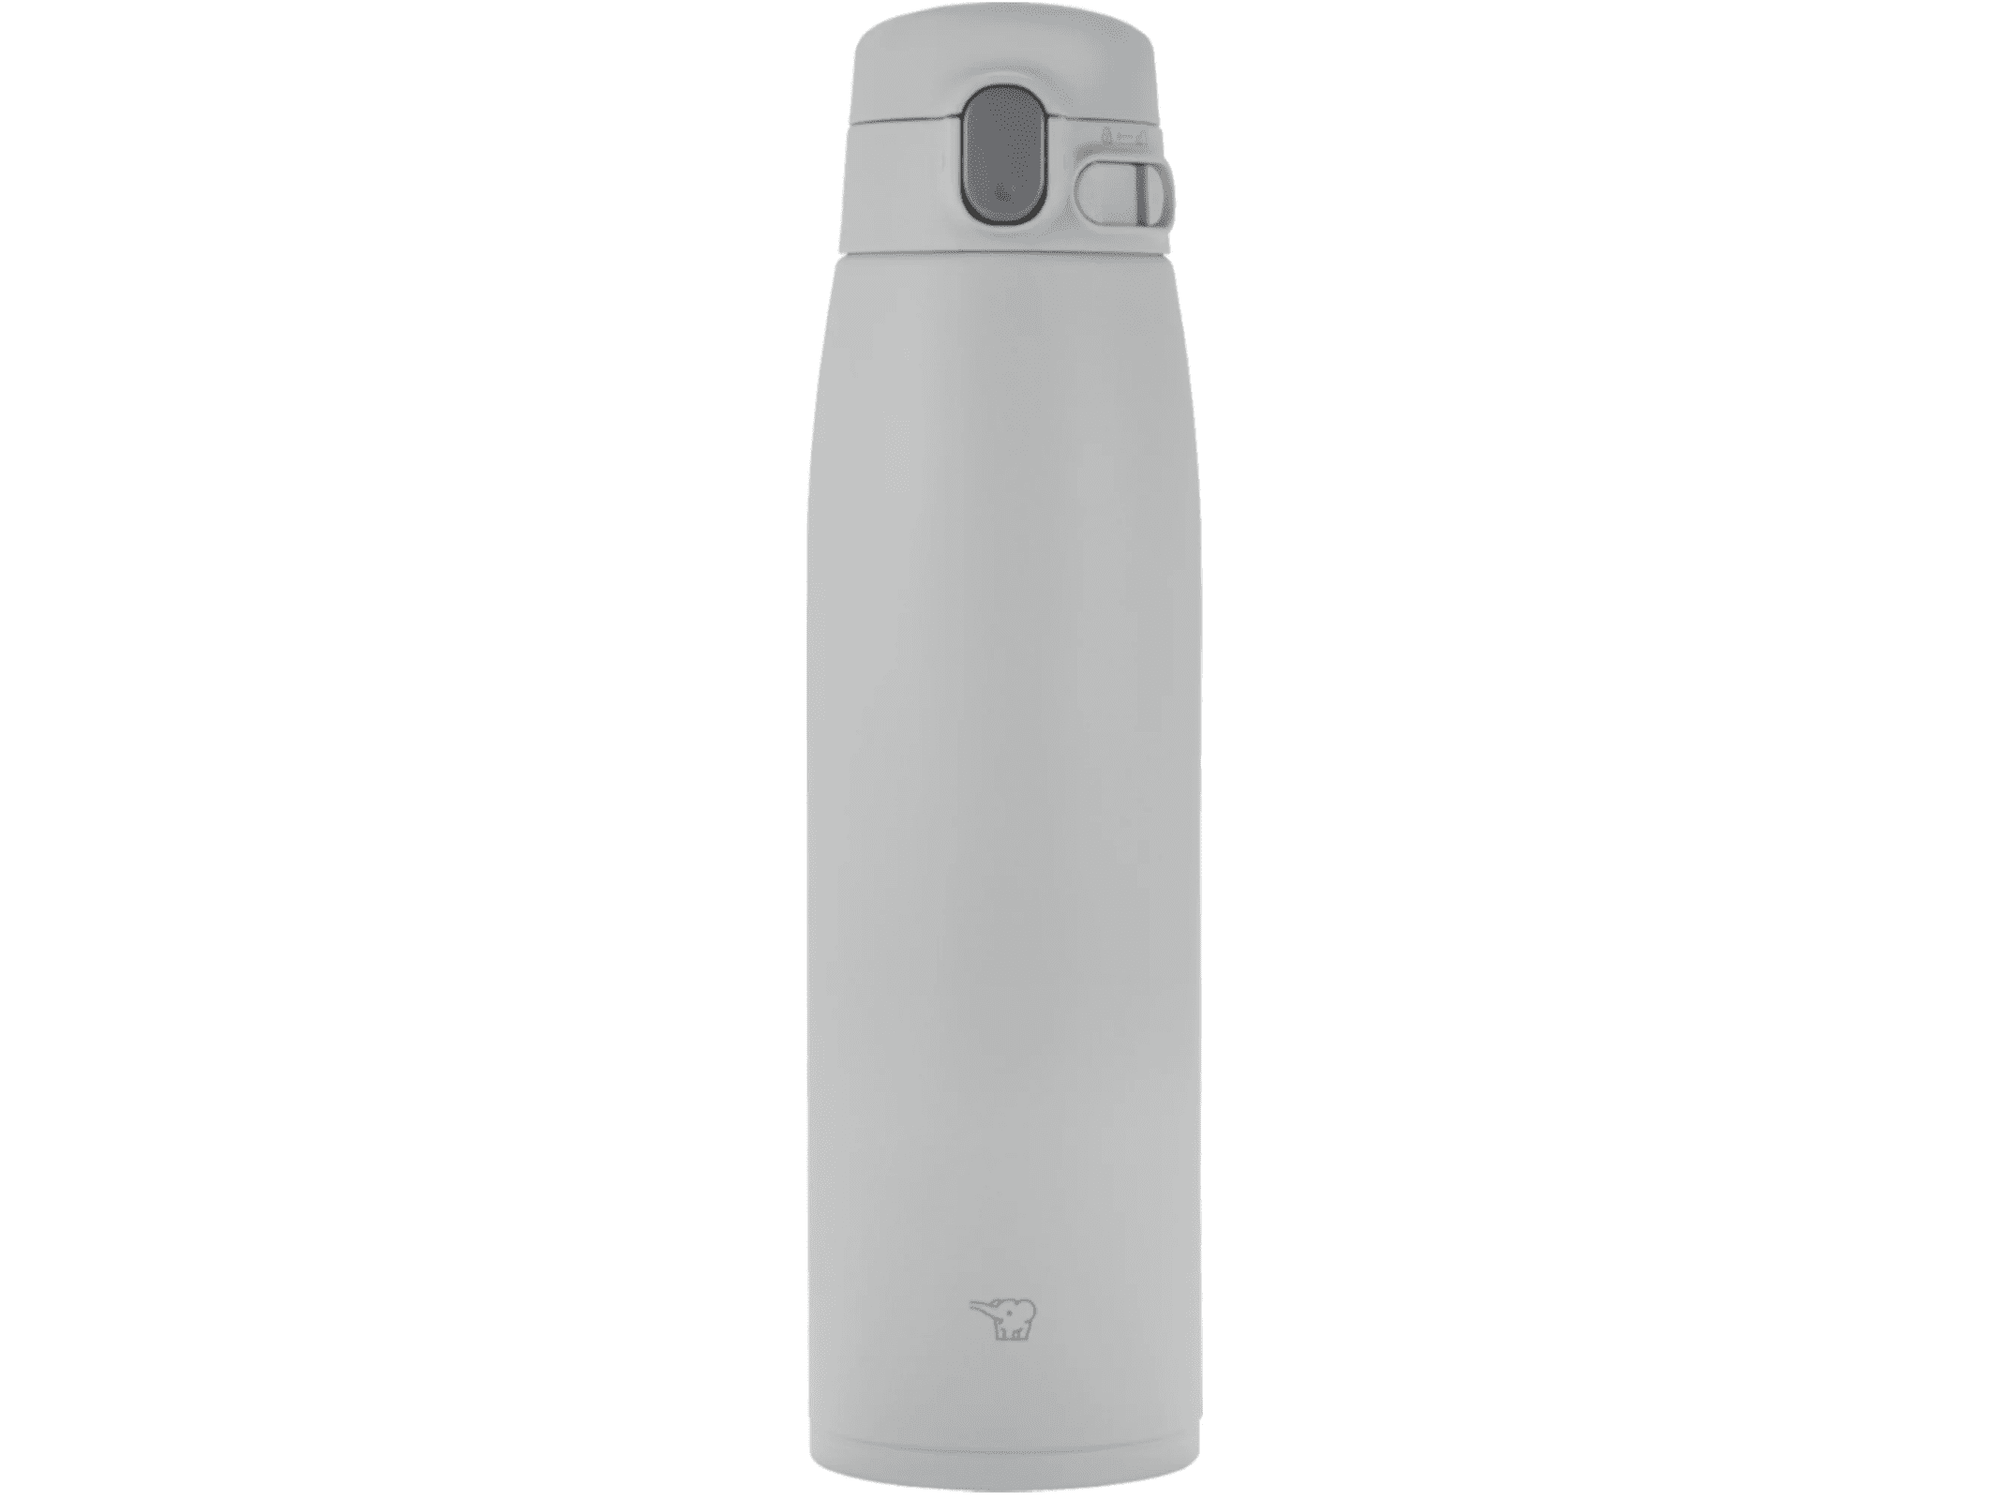 Zojirushi SM-VS Stainless Steel Vacuum Insulated Flask 950ml